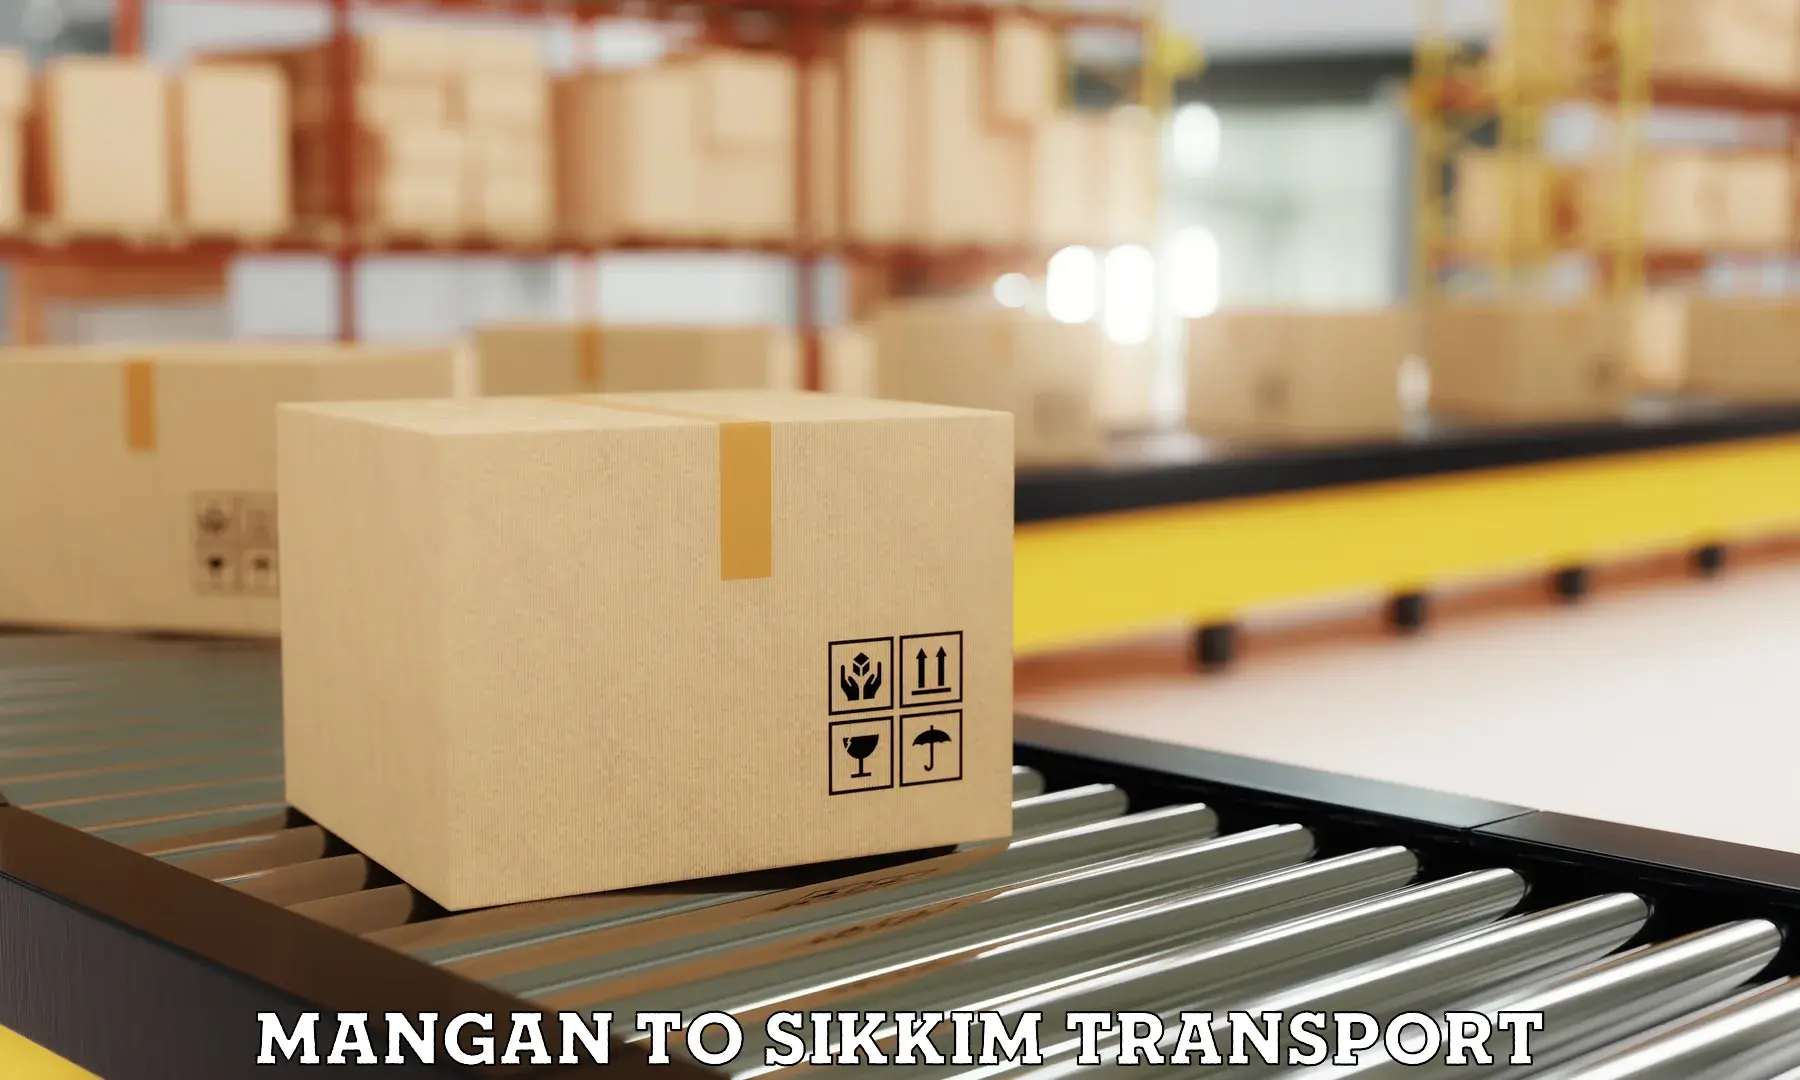 Land transport services Mangan to Mangan